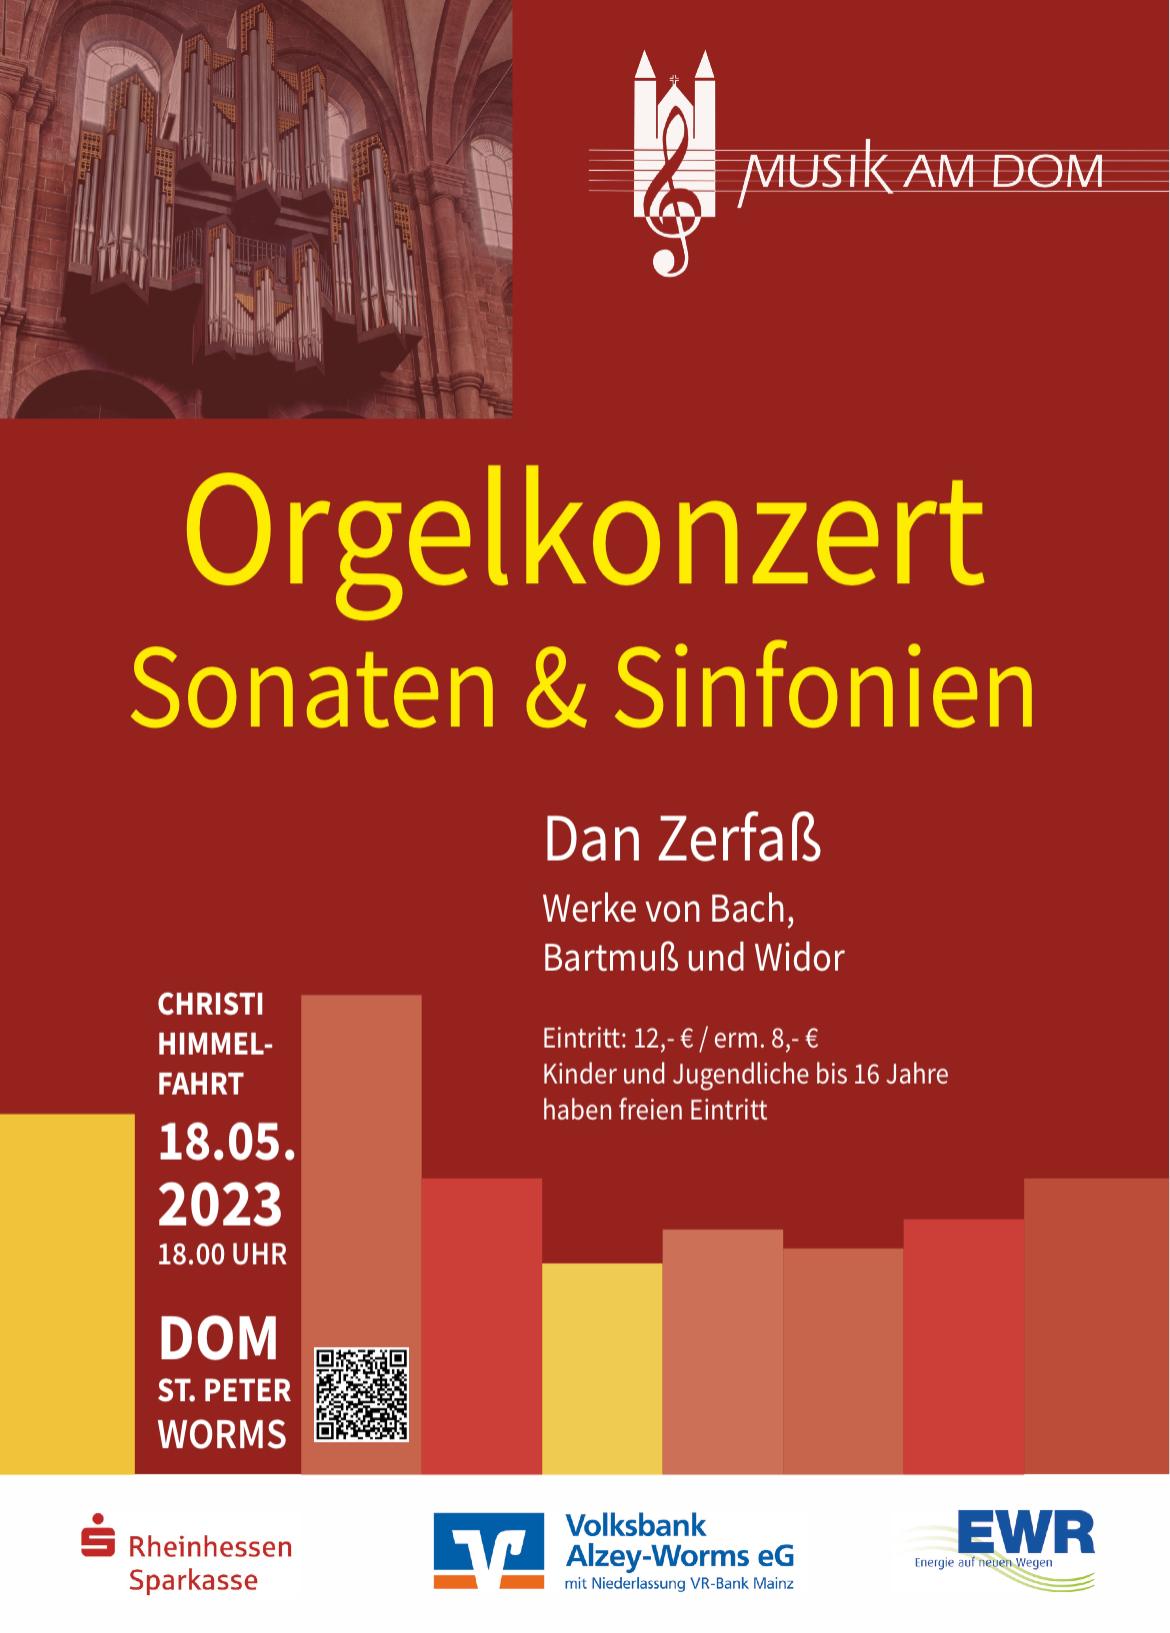 Orgelkonzert Dan Zerfaß (c) Verein Musik am Dom